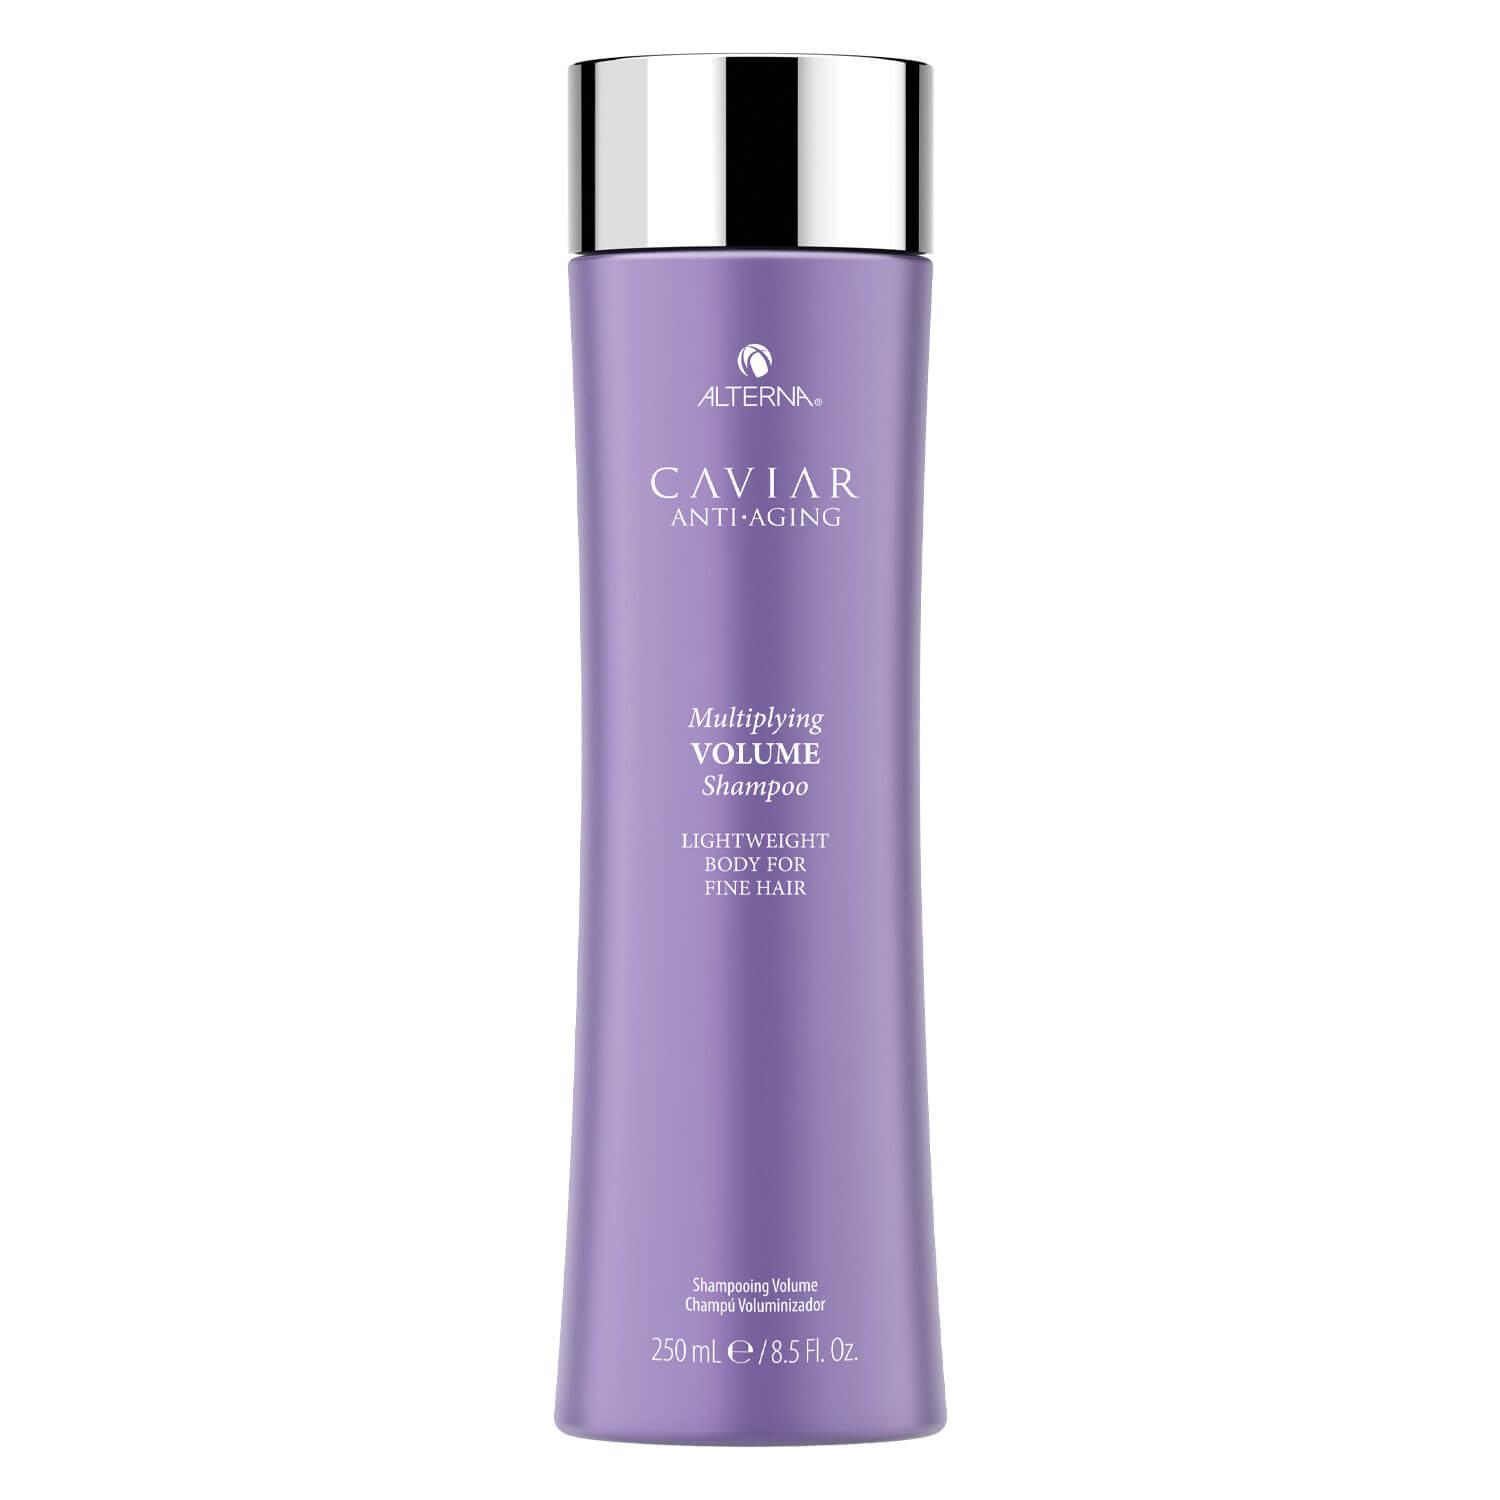 Caviar Volume - Shampoo